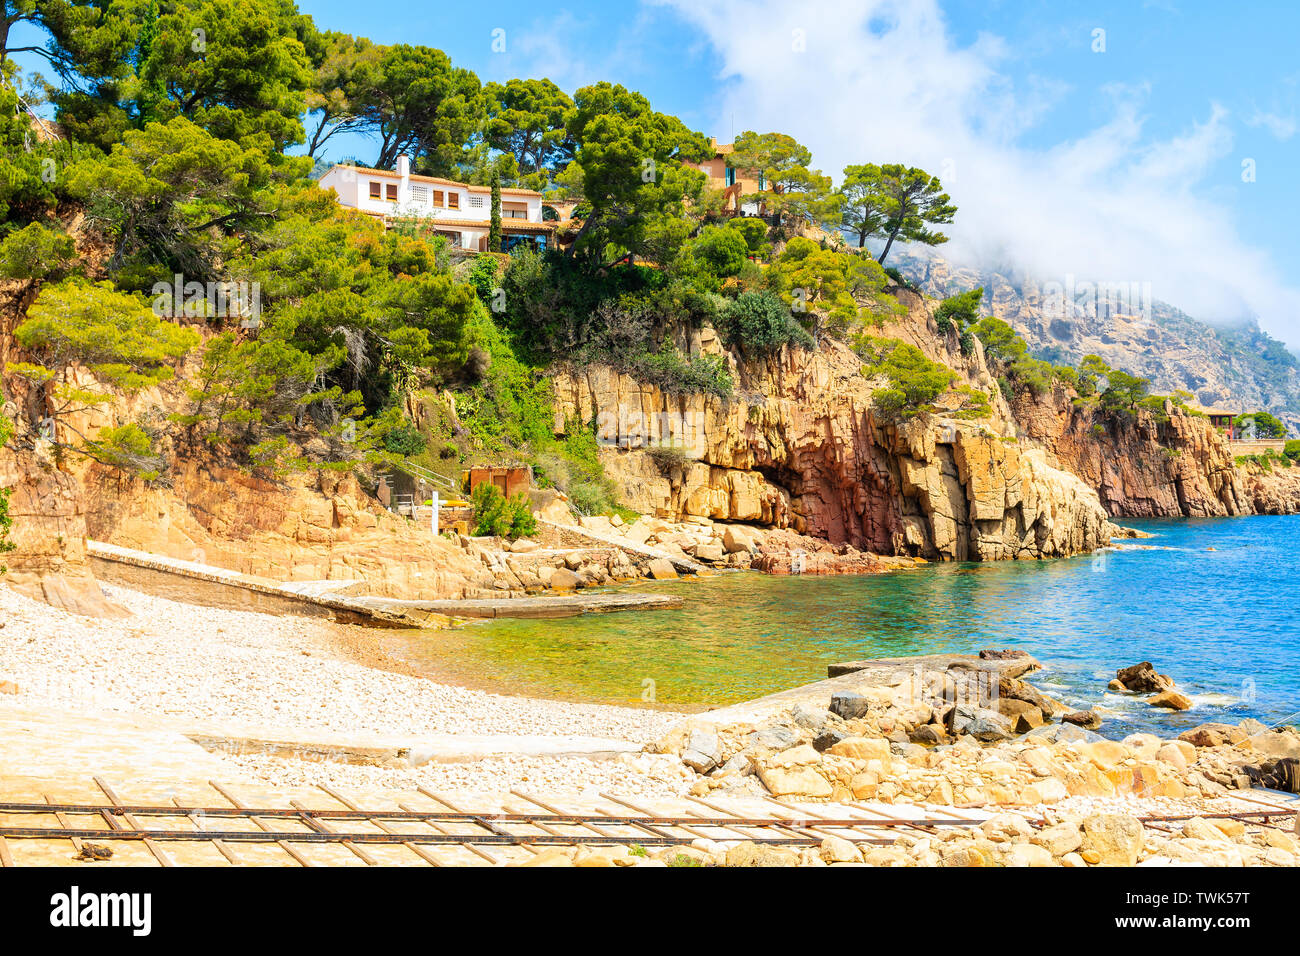 Vista della spiaggia nella pittoresca baia vicino a Fornells village, Costa Brava, Spagna Foto Stock